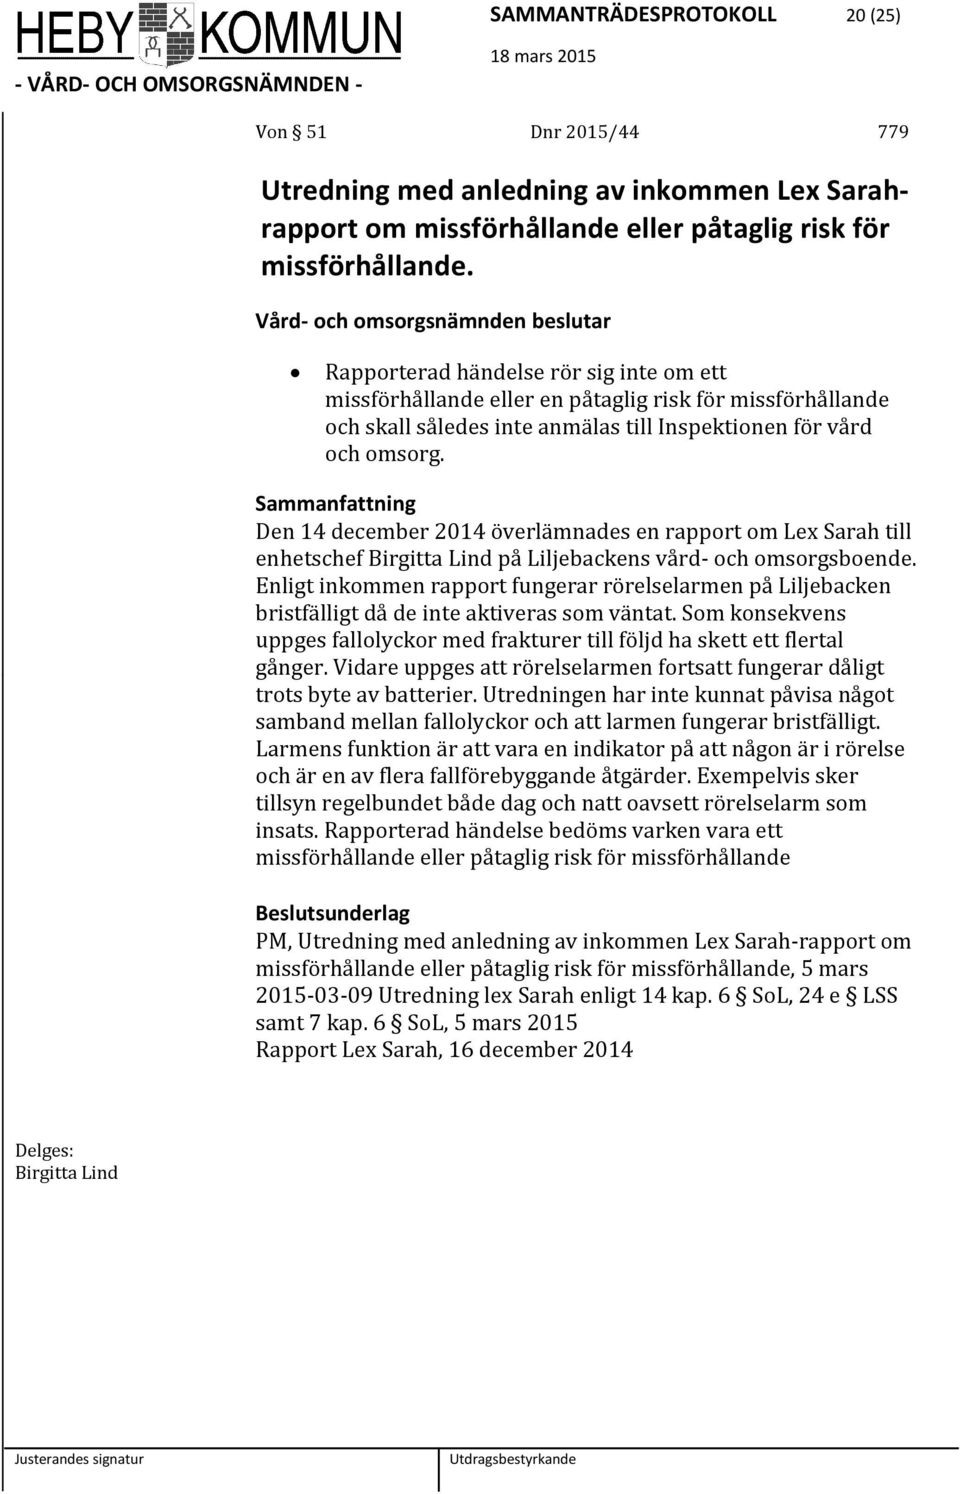 Den 14 december 2014 överlämnades en rapport om Lex Sarah till enhetschef Birgitta Lind på Liljebackens vård- och omsorgsboende.